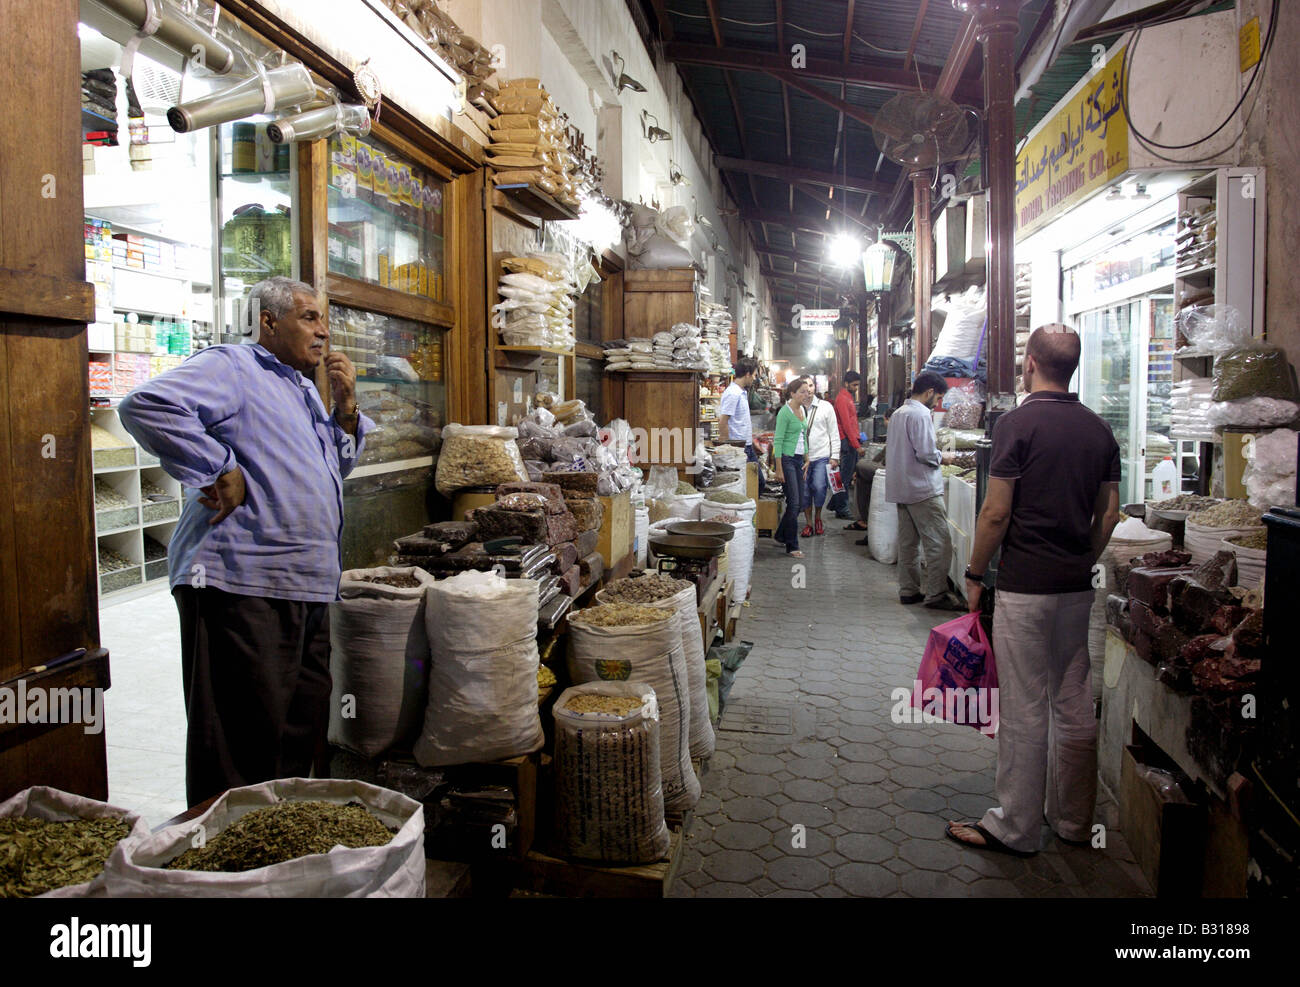 Un negozio di spezie in un mercato di strada, Dubai, Emirati Arabi Uniti Foto Stock